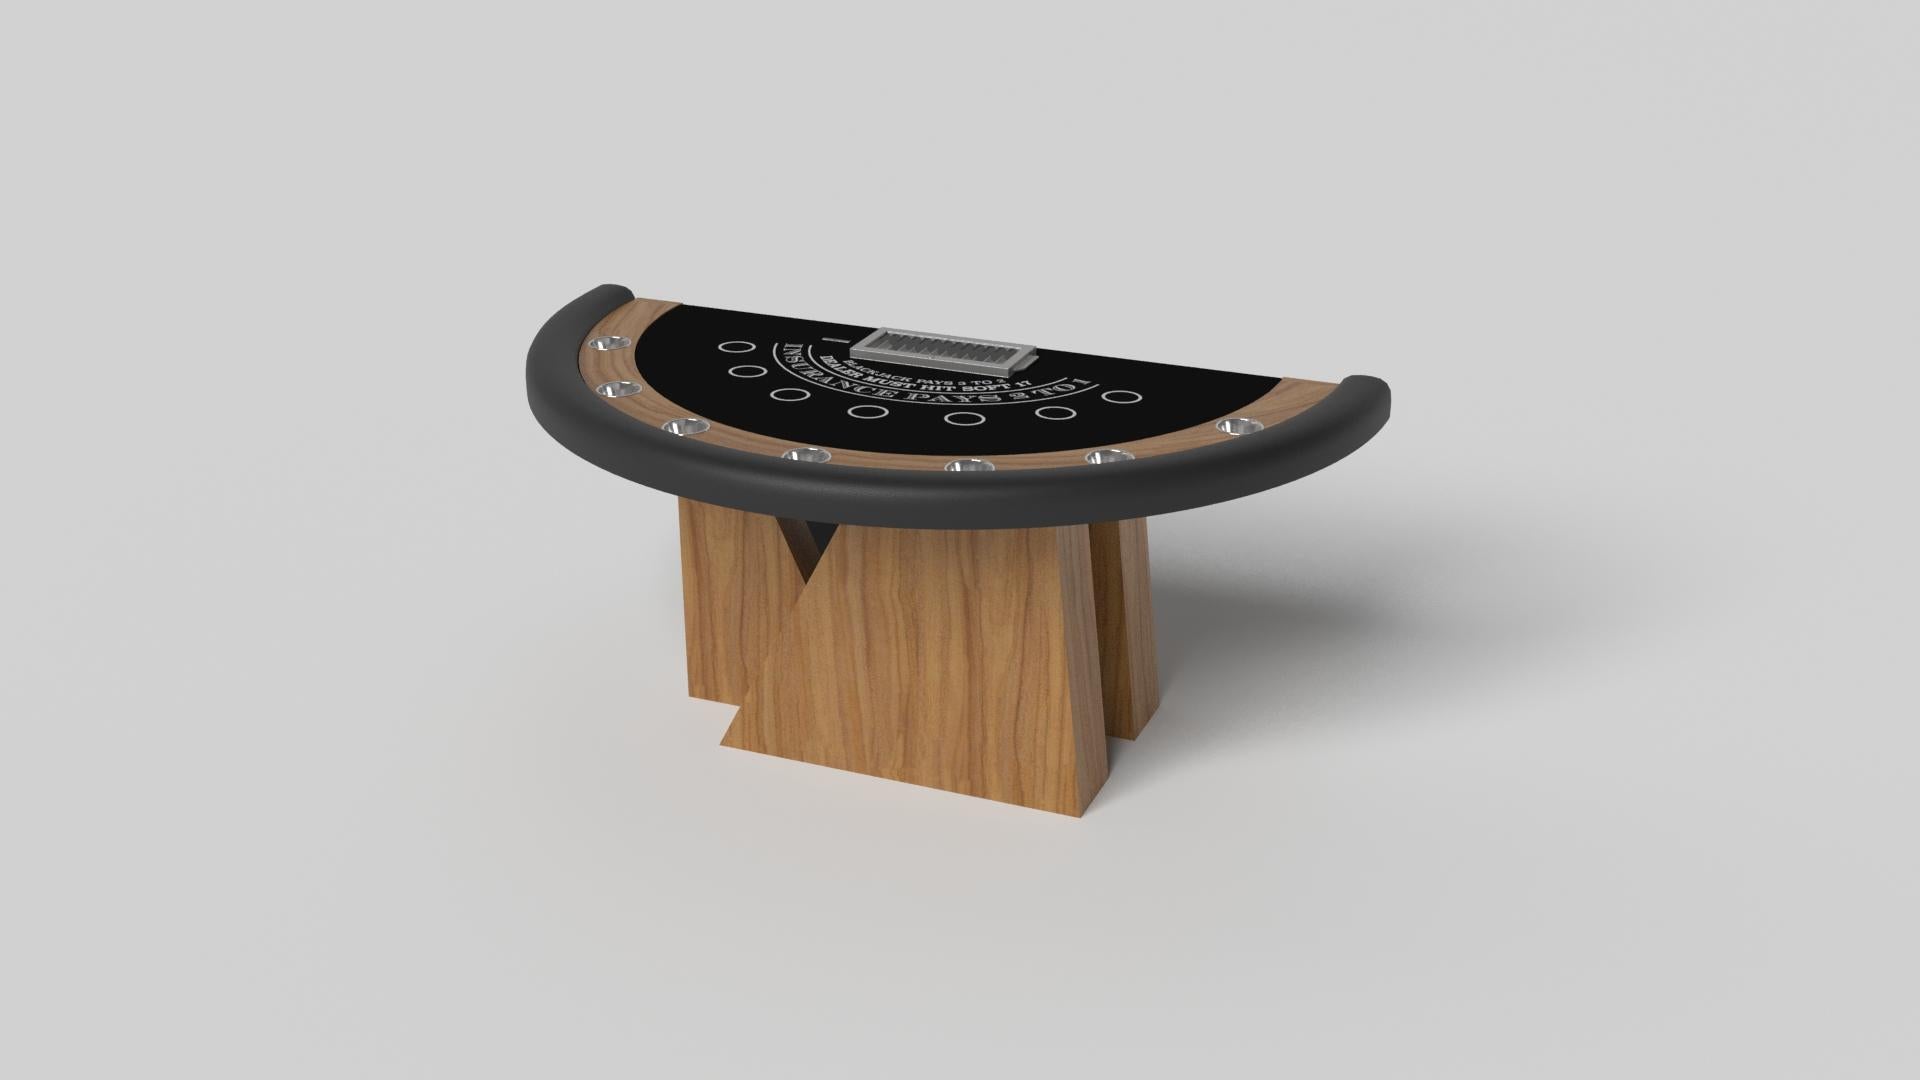 Ein asymmetrischer Sockel erzeugt eine frei schwebende Silhouette, die den Blackjack-Tisch Stilt aus Nussbaumholz zu einer überzeugenden, zeitgenössischen Ergänzung für das moderne Zuhause macht. Dieser luxuriöse, handgefertigte Spieltisch ist mit